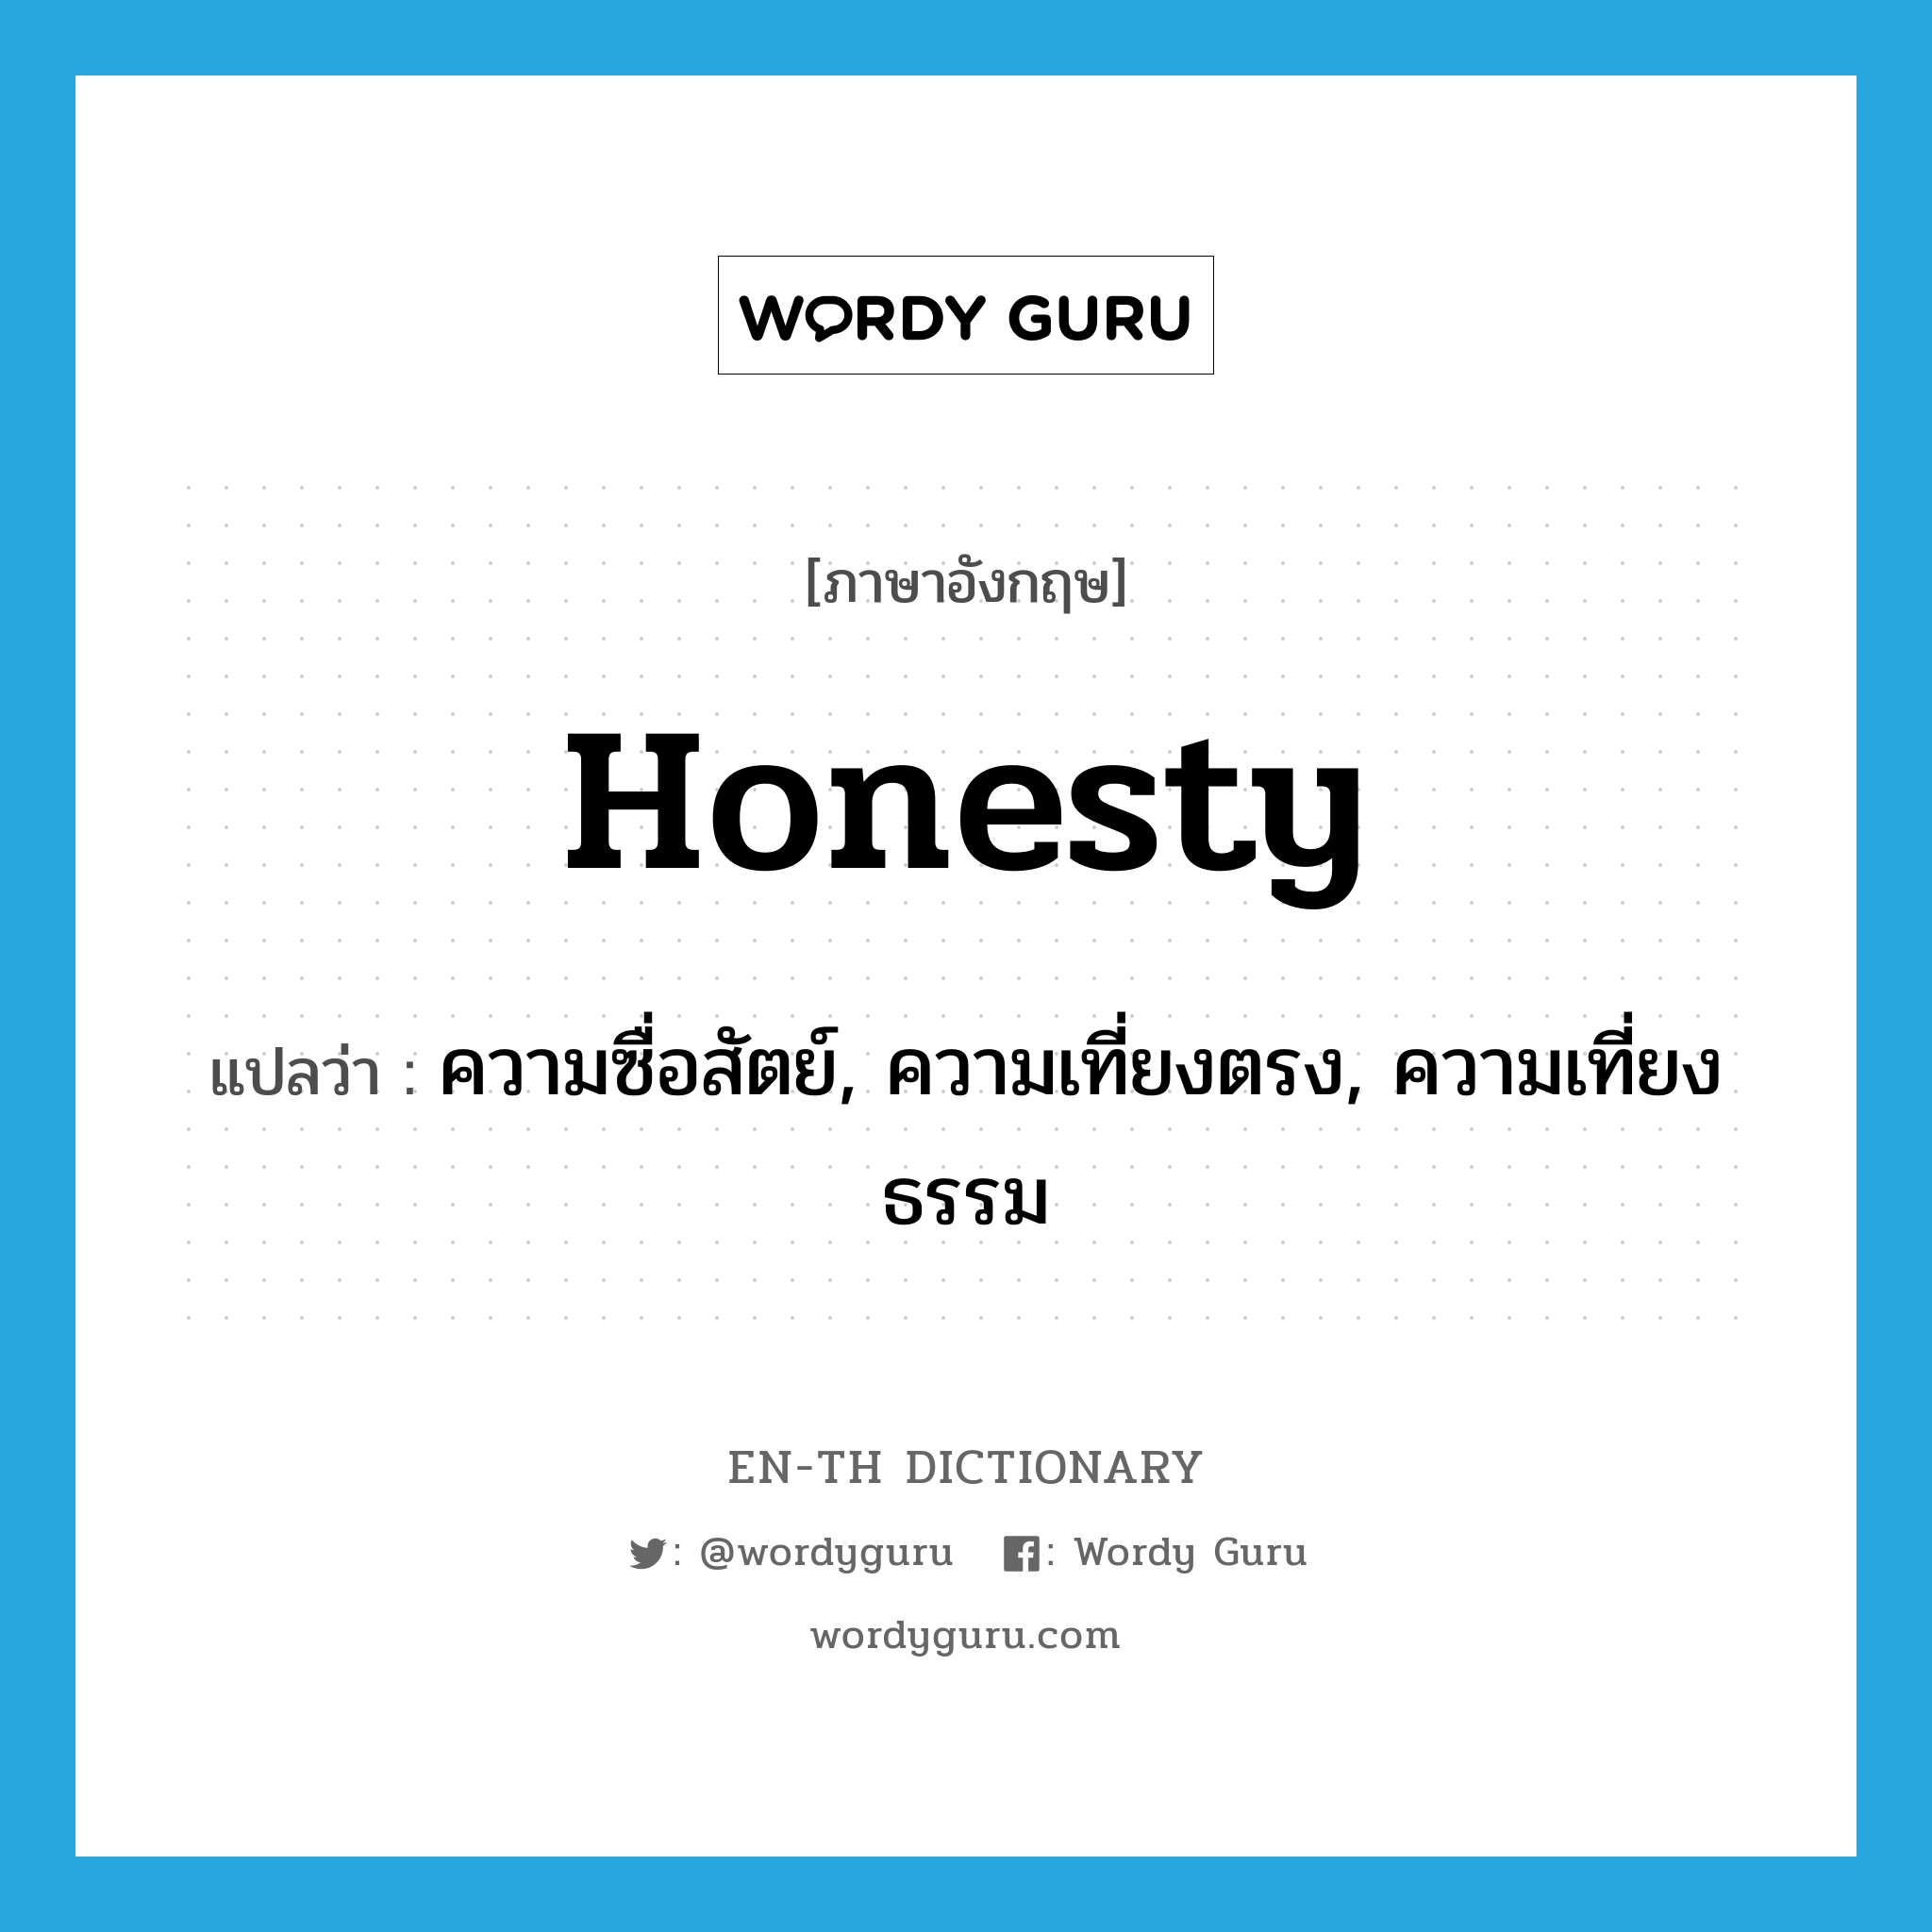 ความซื่อสัตย์, ความเที่ยงตรง, ความเที่ยงธรรม ภาษาอังกฤษ?, คำศัพท์ภาษาอังกฤษ ความซื่อสัตย์, ความเที่ยงตรง, ความเที่ยงธรรม แปลว่า honesty ประเภท N หมวด N